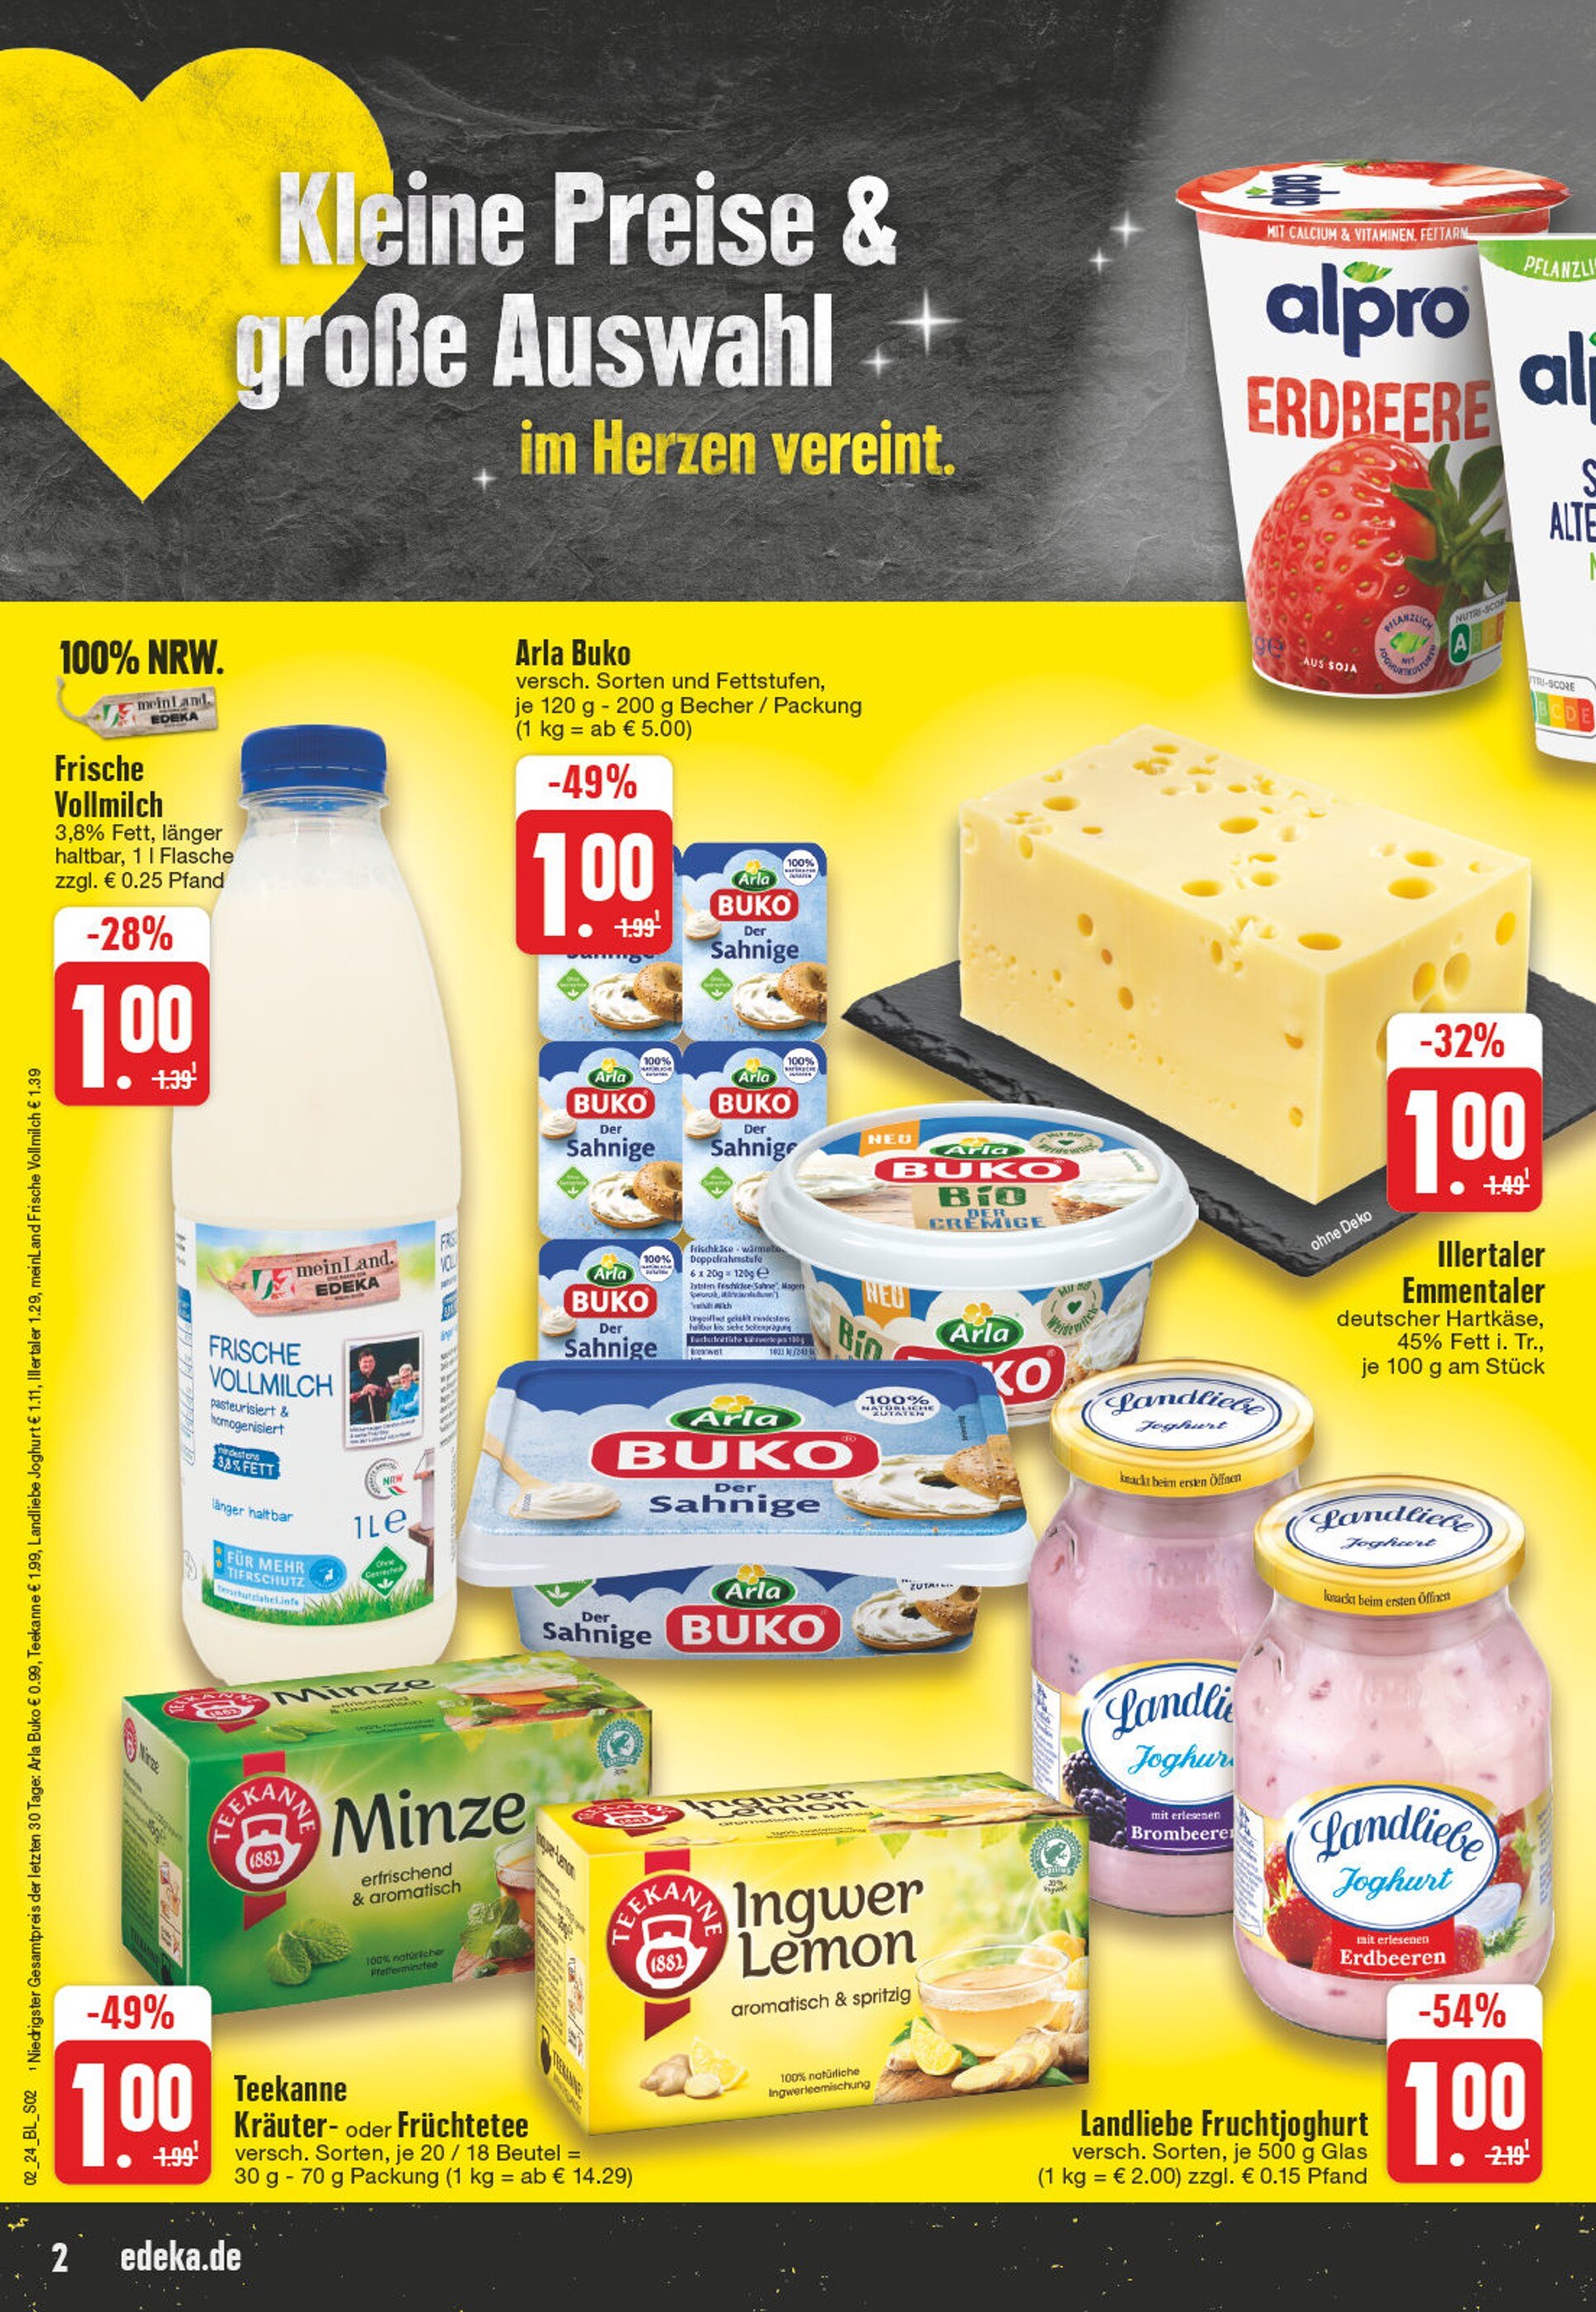 Käse kaufen in - Gronau in günstige Angebote Gronau